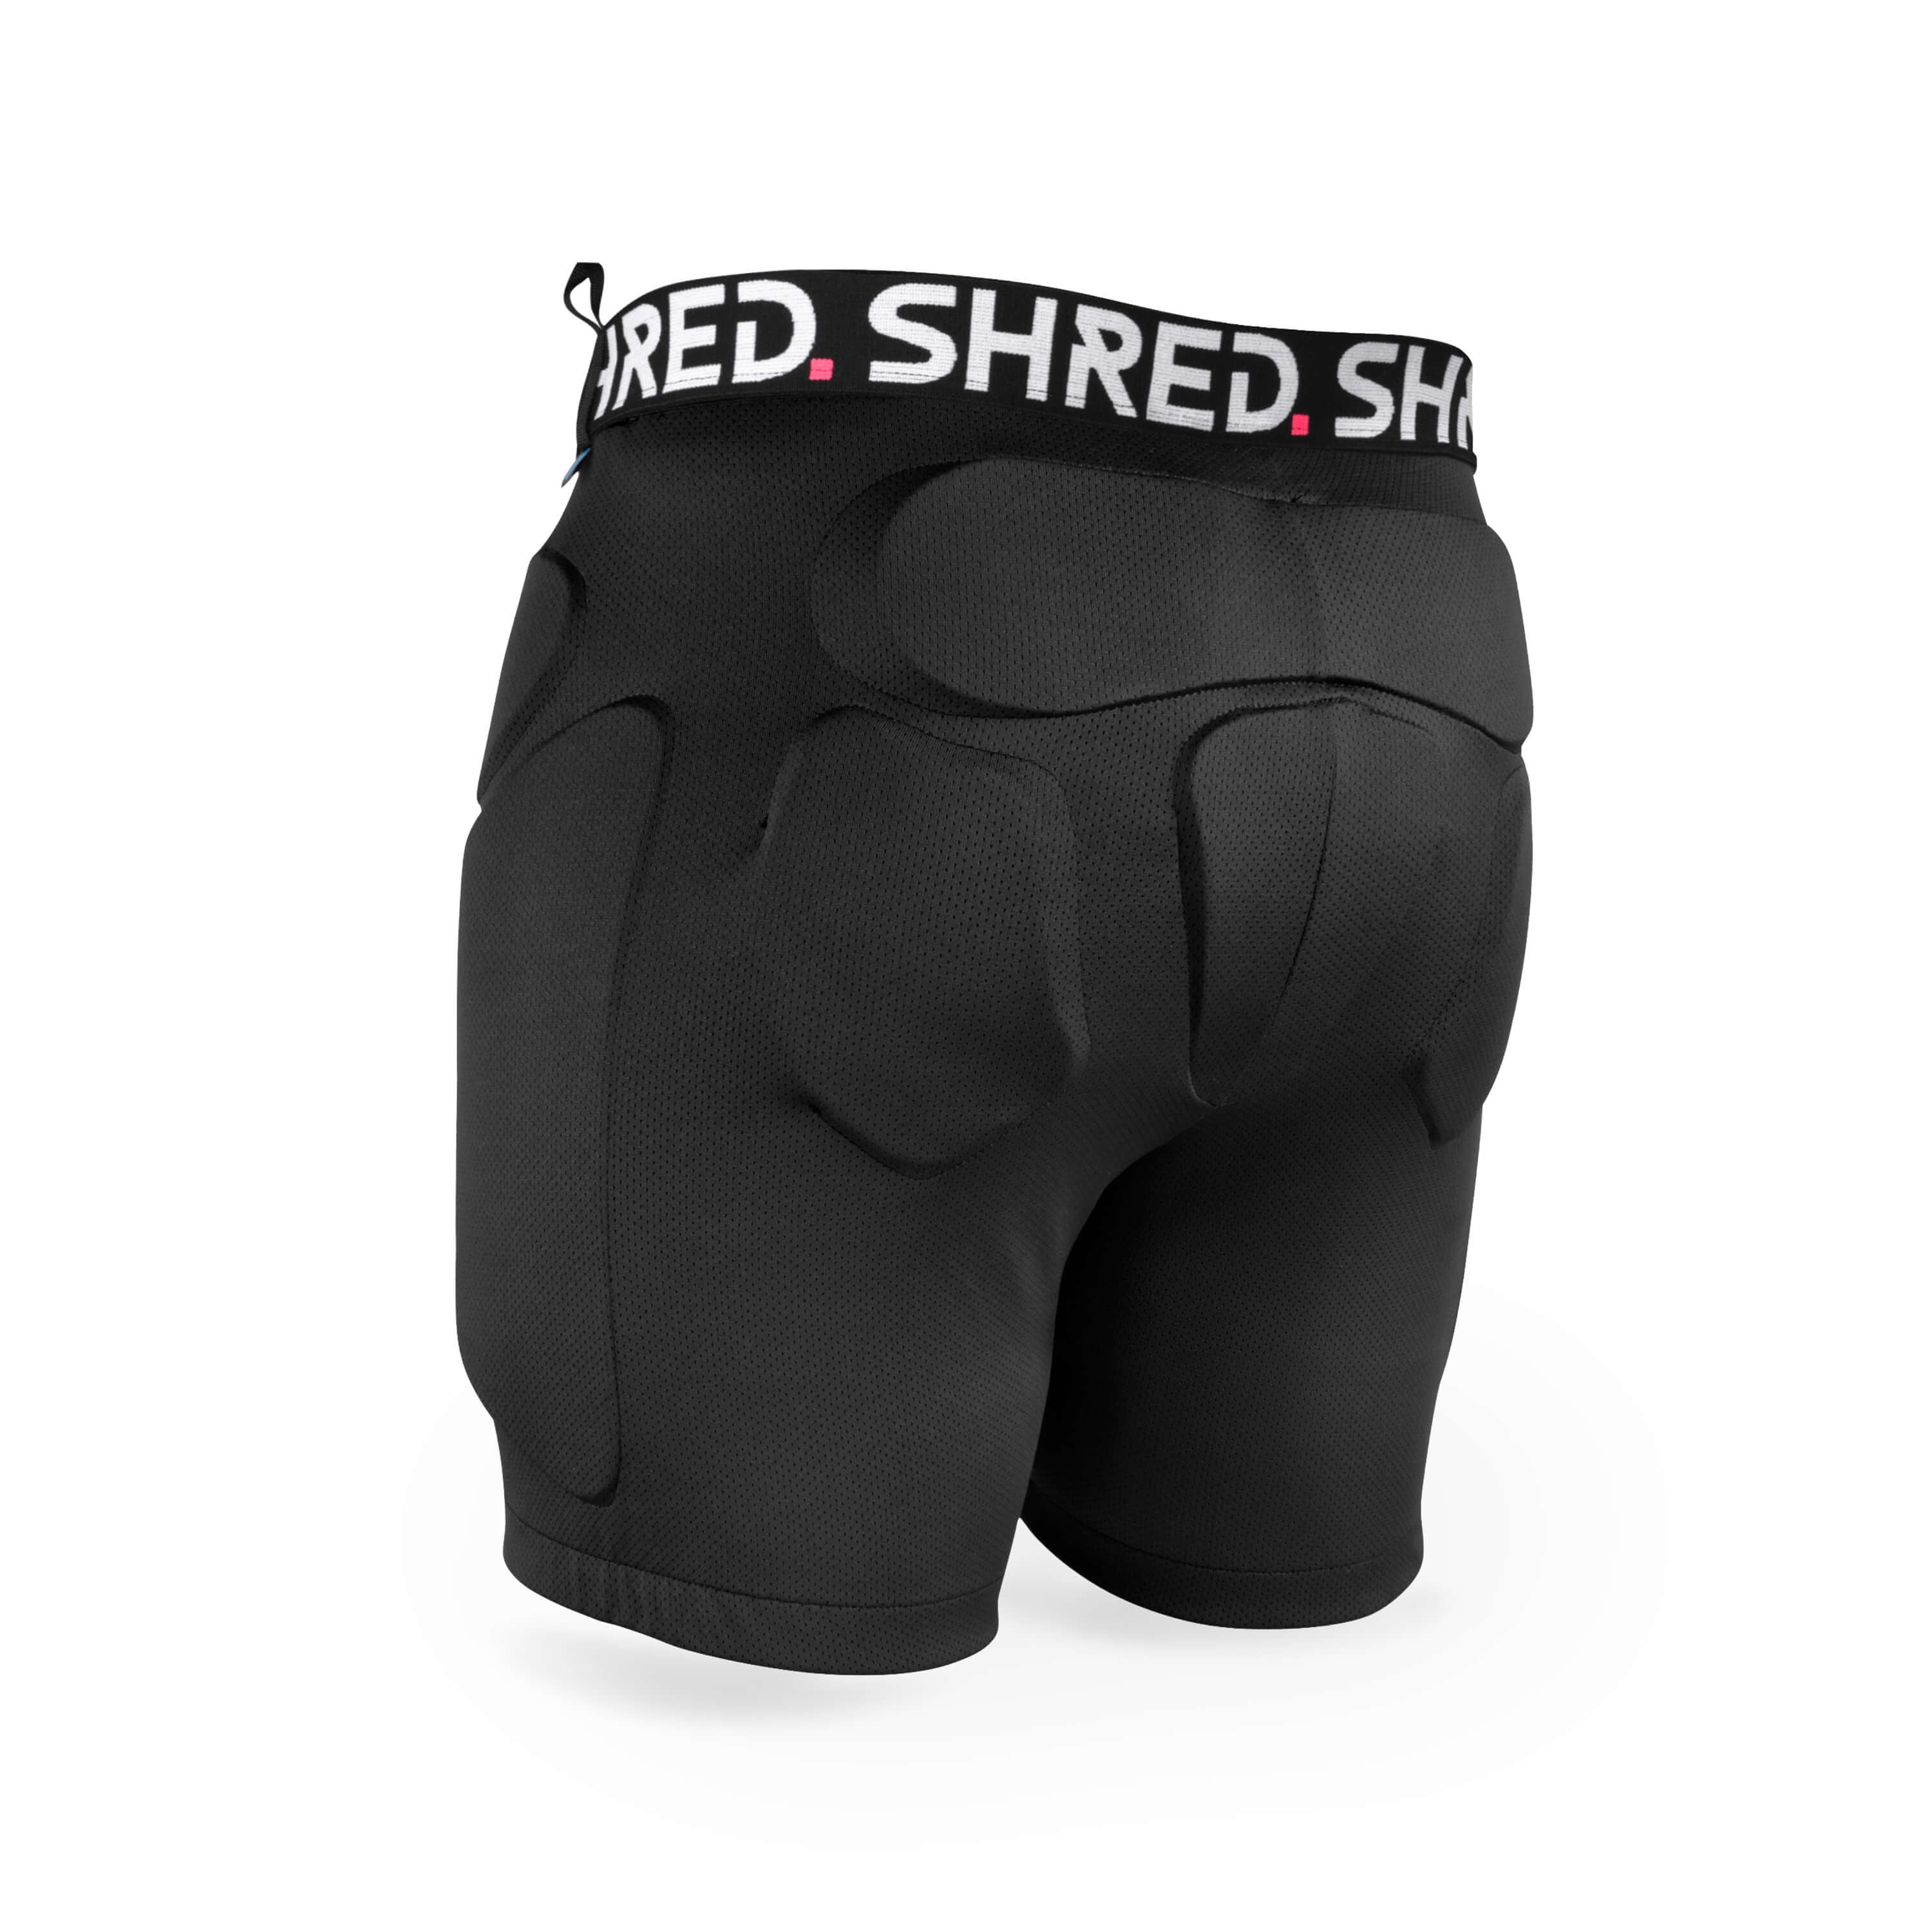 SPORT PROTECH.COM - Des shorts pour soulager les douleurs liées à